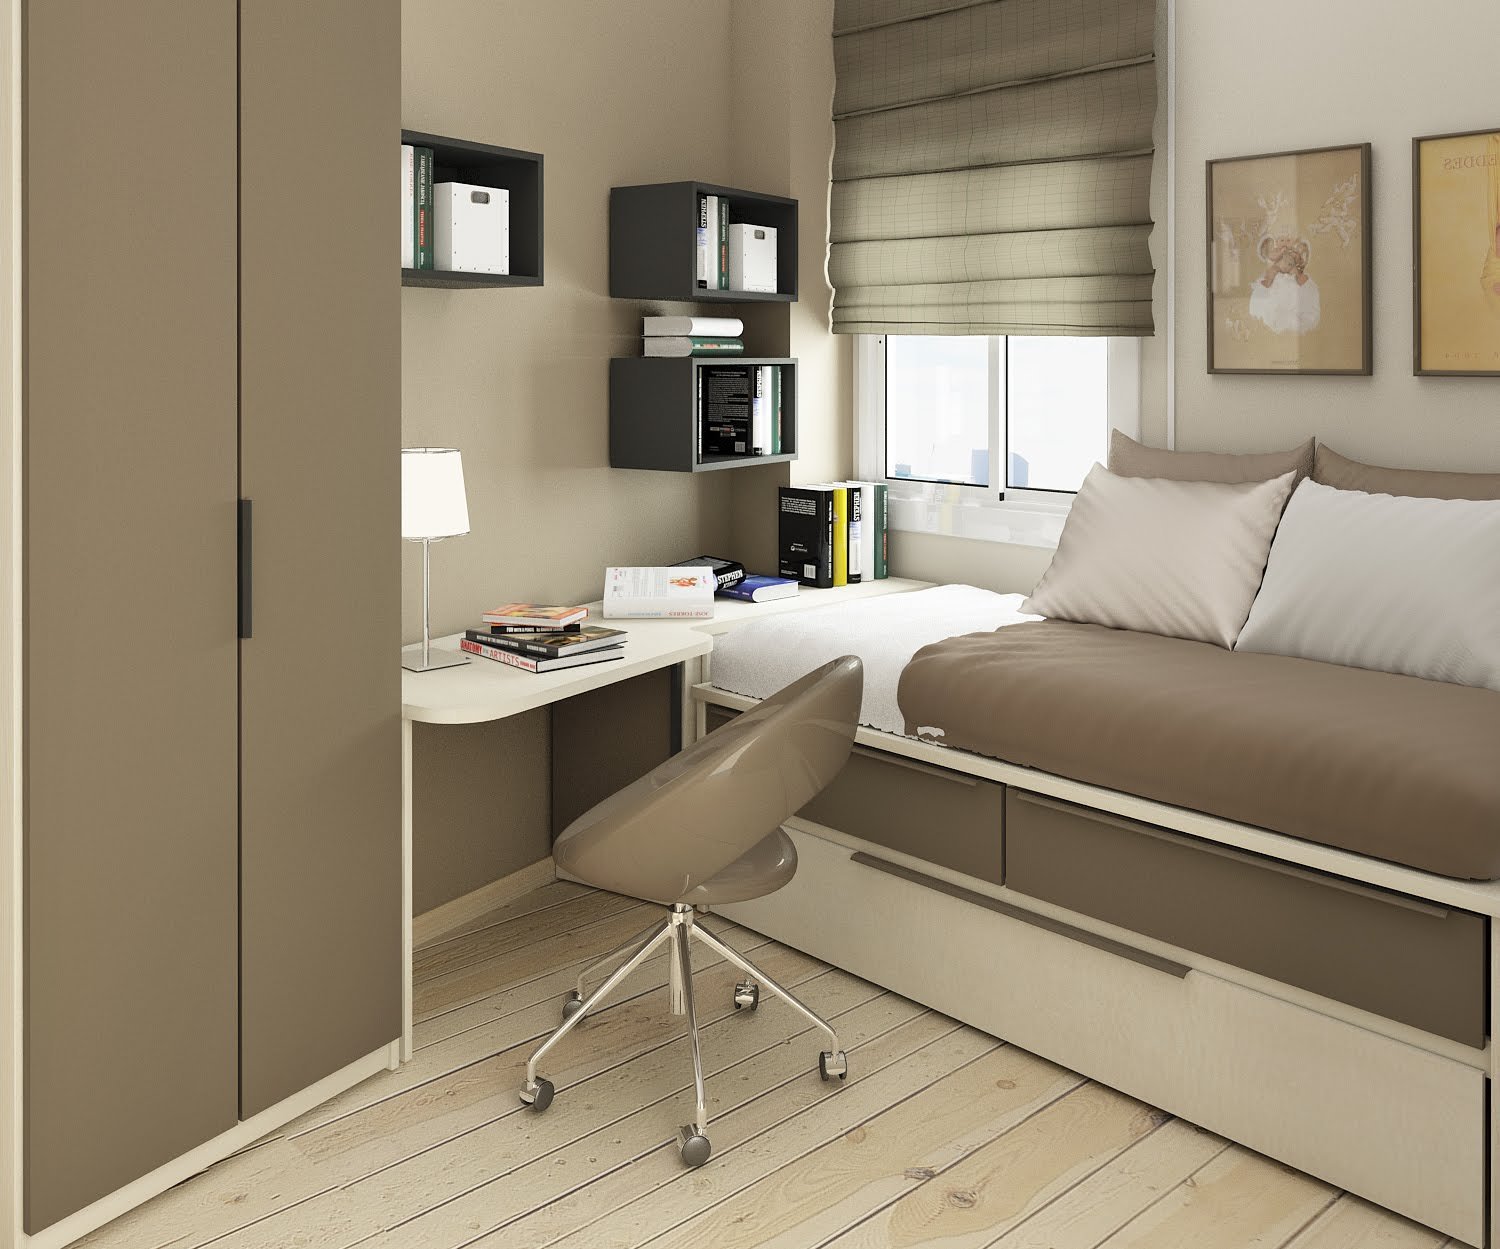 Спальня 10 кв м: небольшое пространство для больших идей по интерьеру